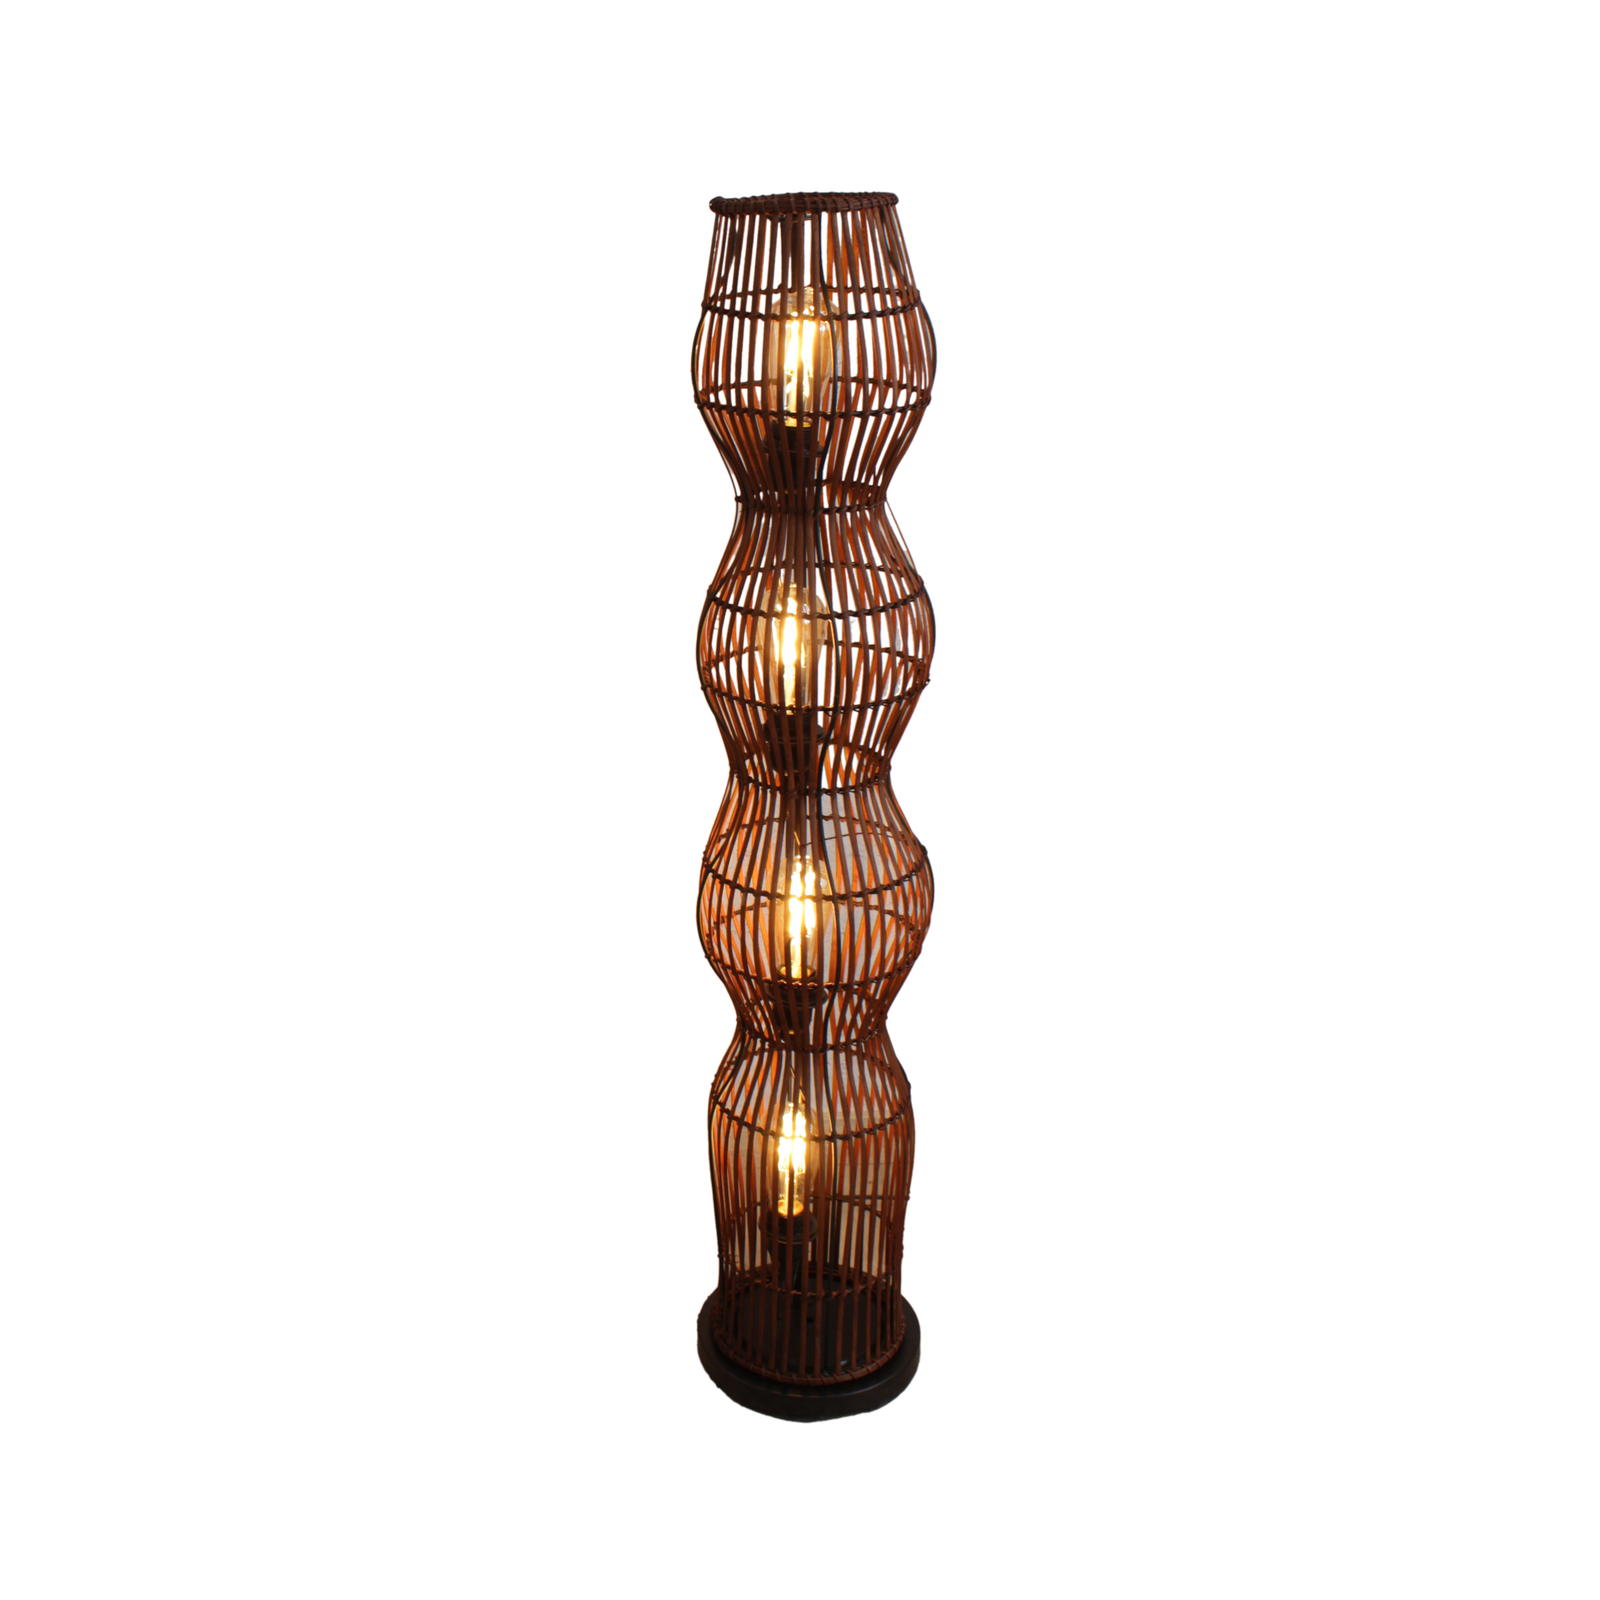 Bamboo floor lamp, brown